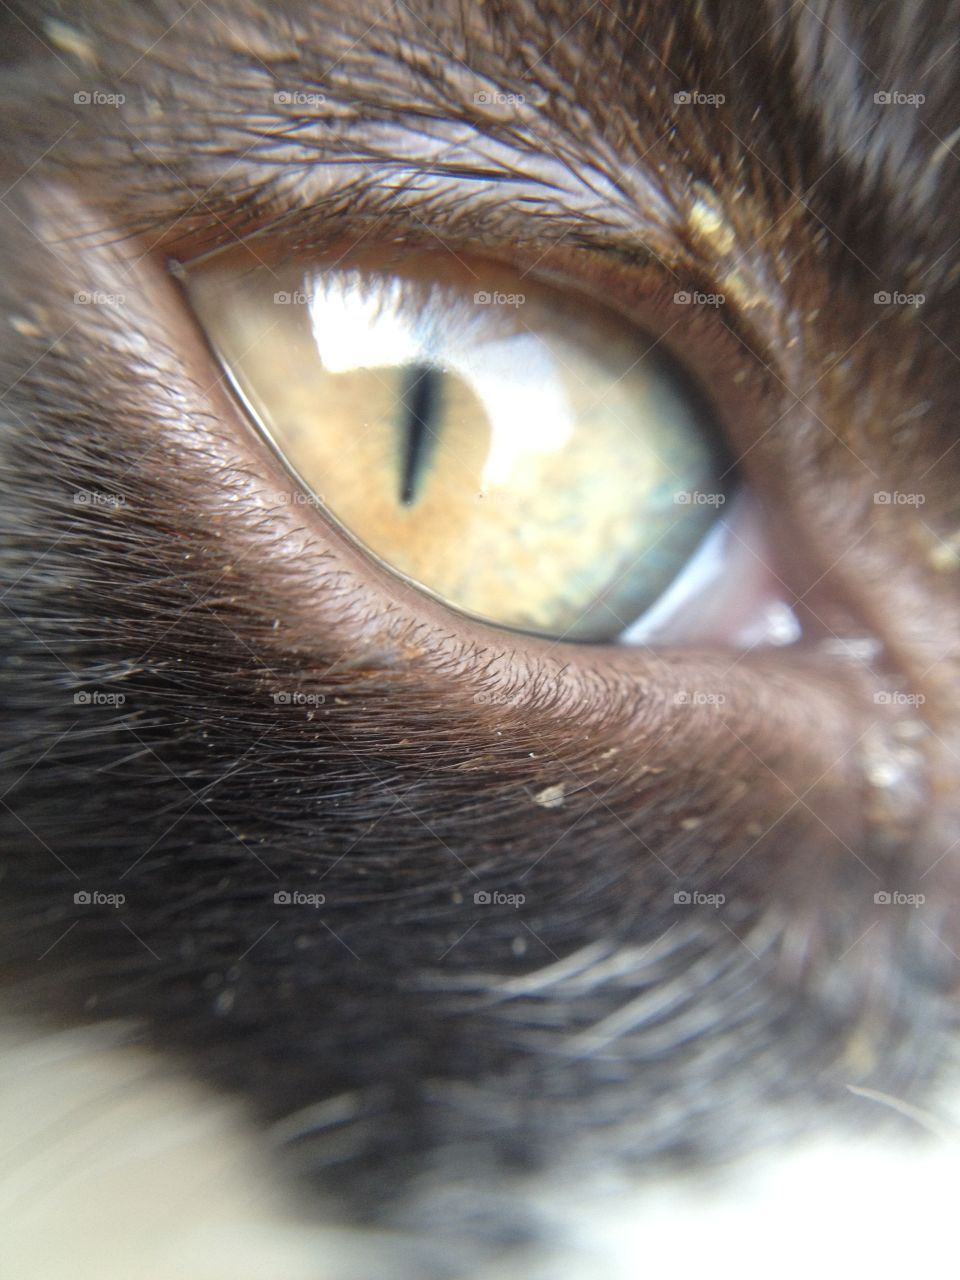 Cat's eye. The eye of a small black kitten.